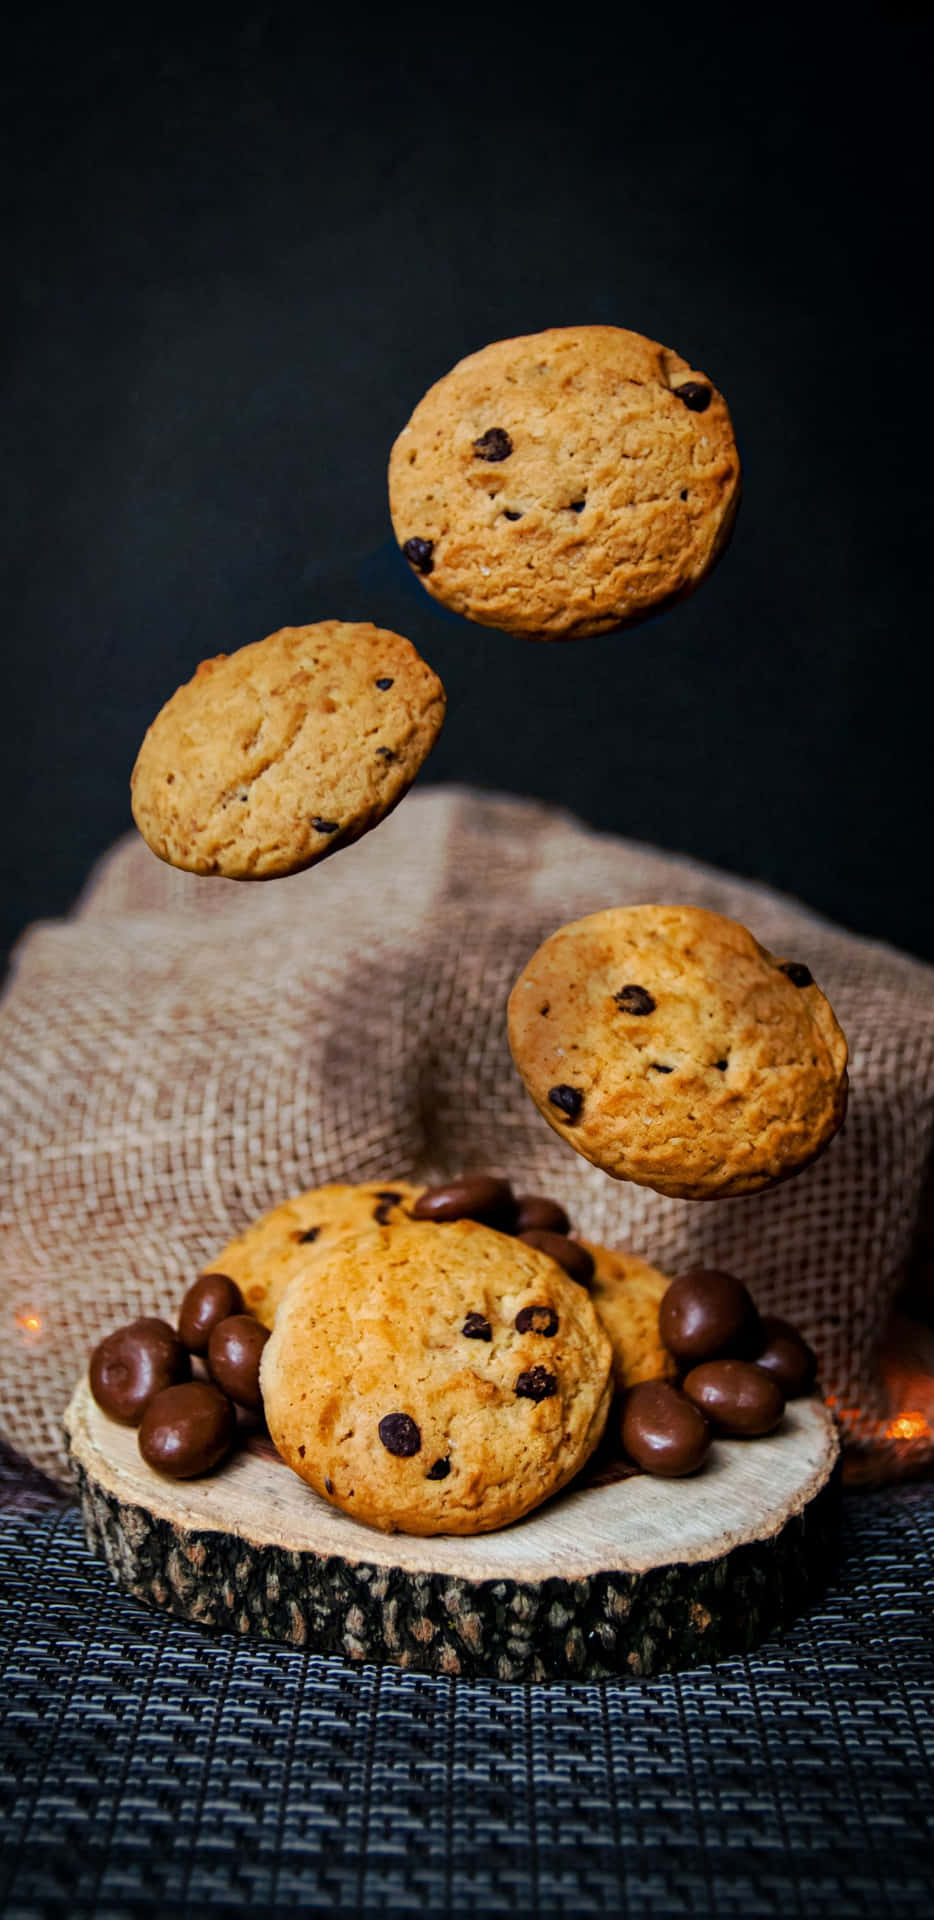 Fotografiade Comida Papel De Parede De Cookies Pixel 3xl.